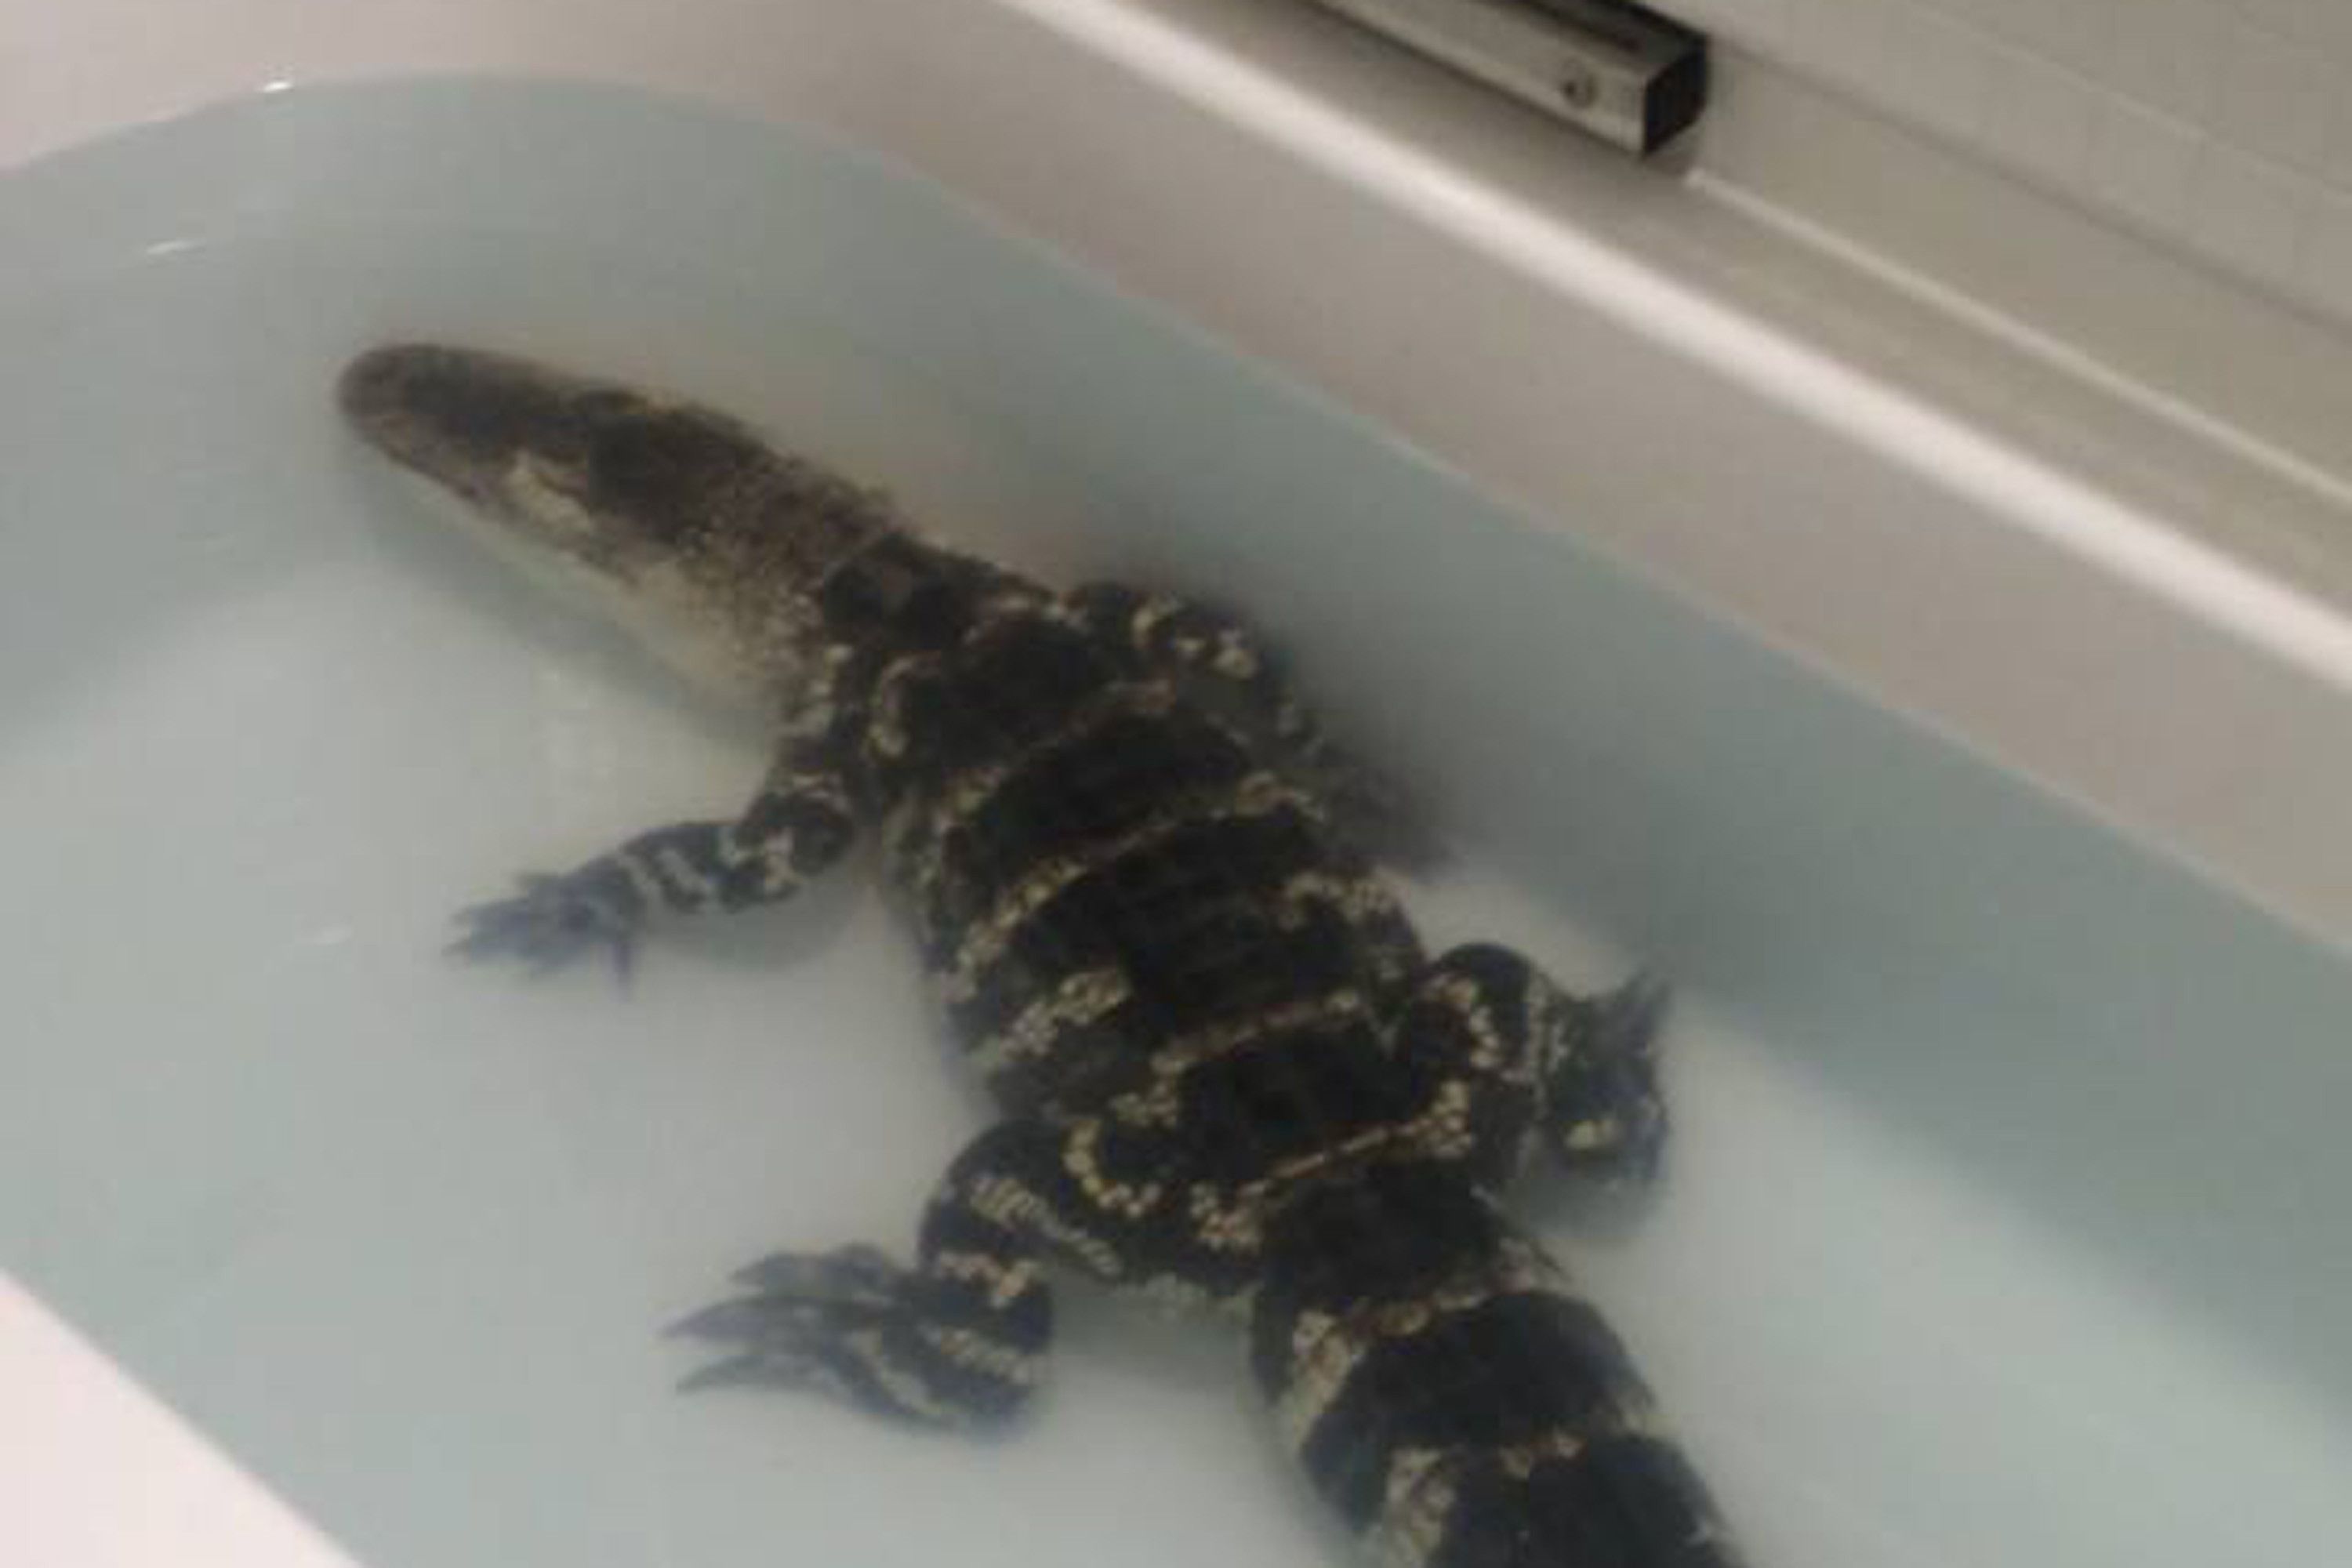 An alligator in a bathtub 